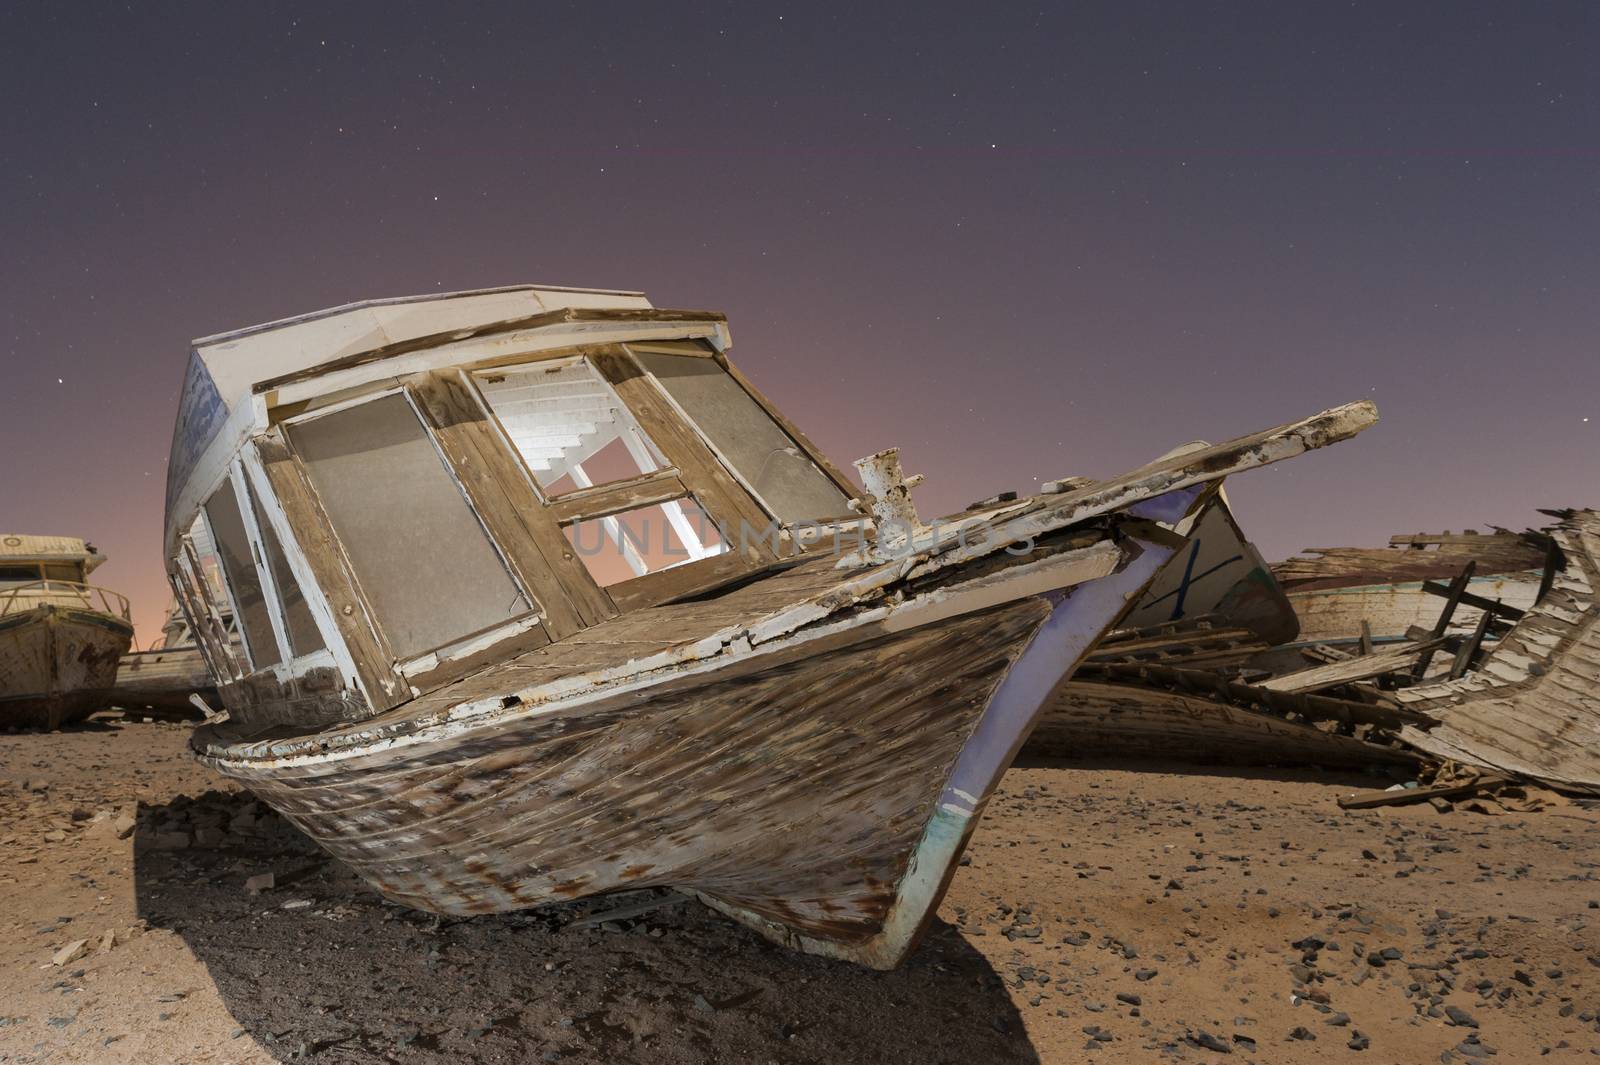 Derelict boats in the desert at night by paulvinten